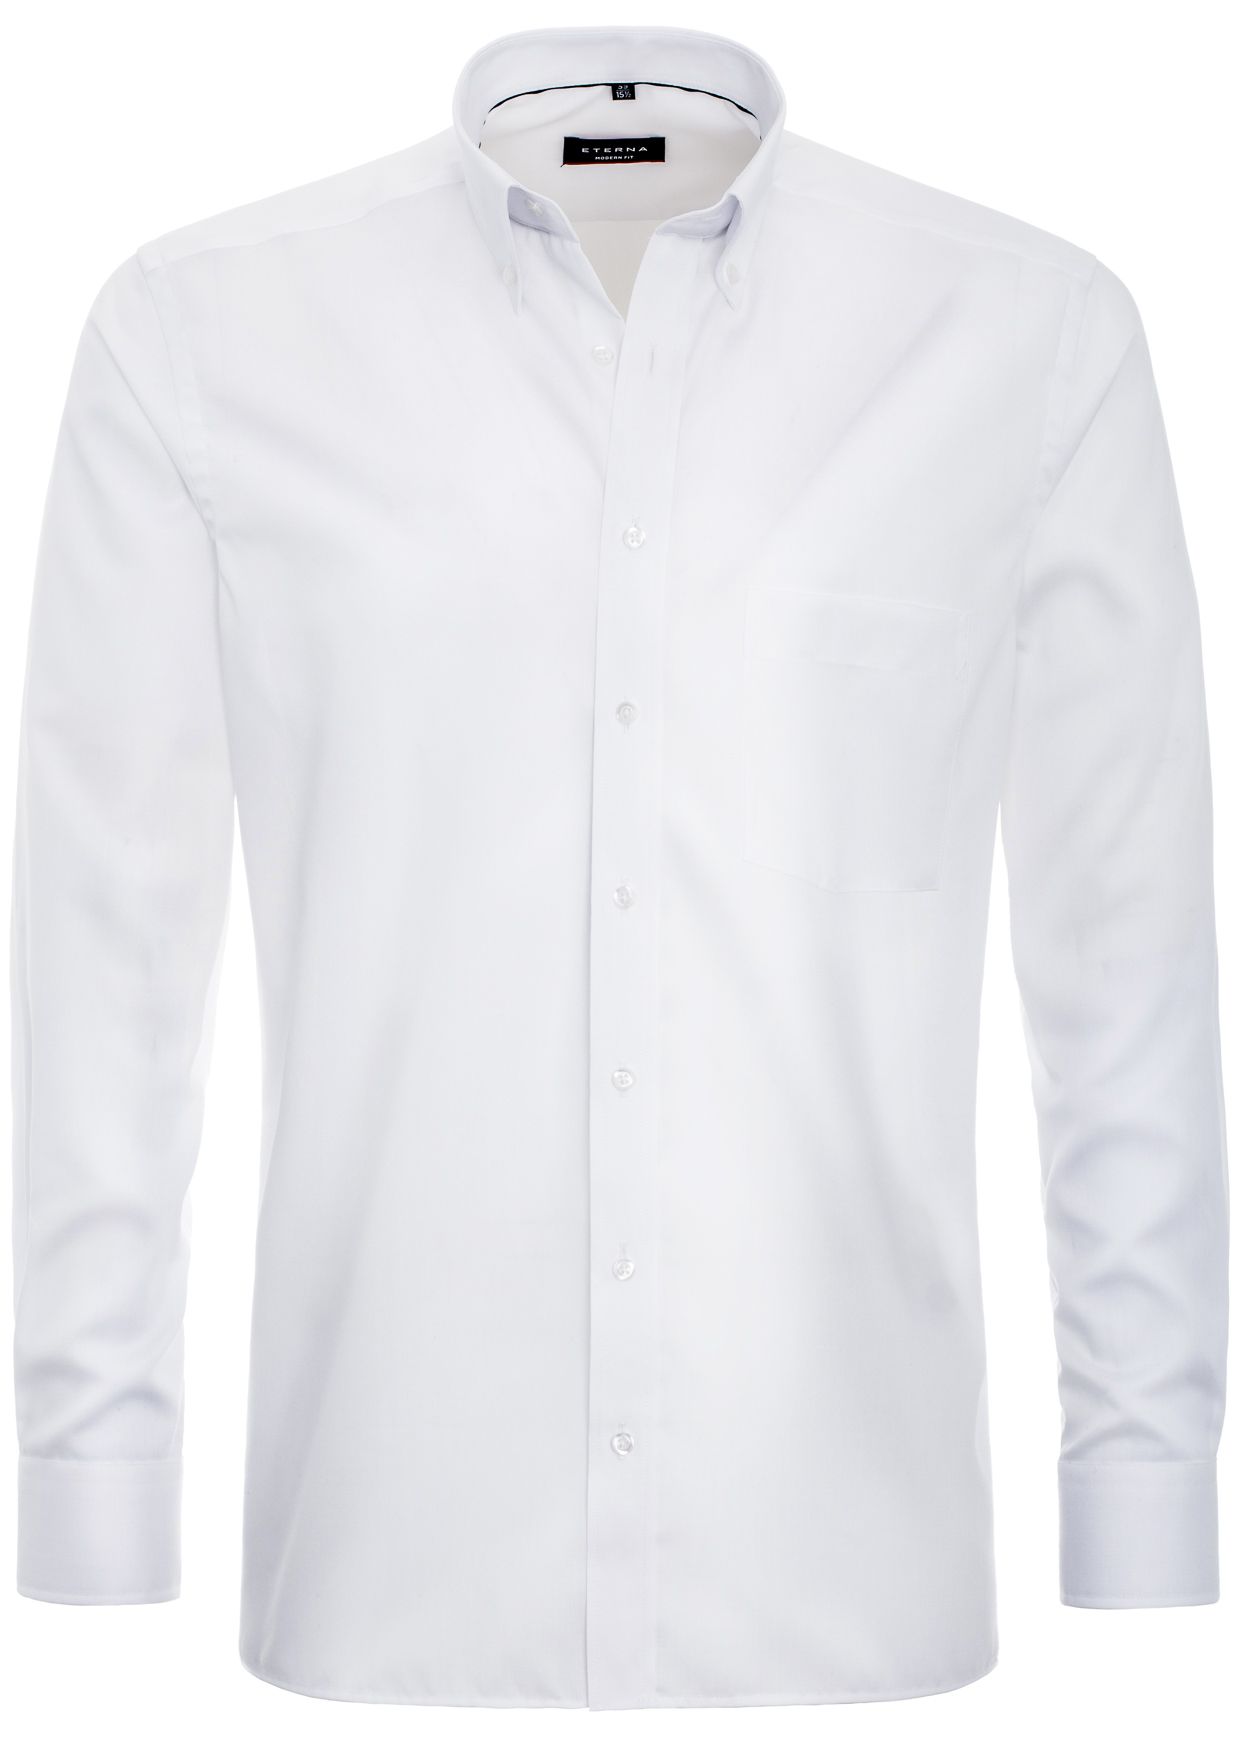 Рубашка мужская ETERNA 8100-00-X194 белая 41 - купить в Икона Стиля, цена на Мегамаркет